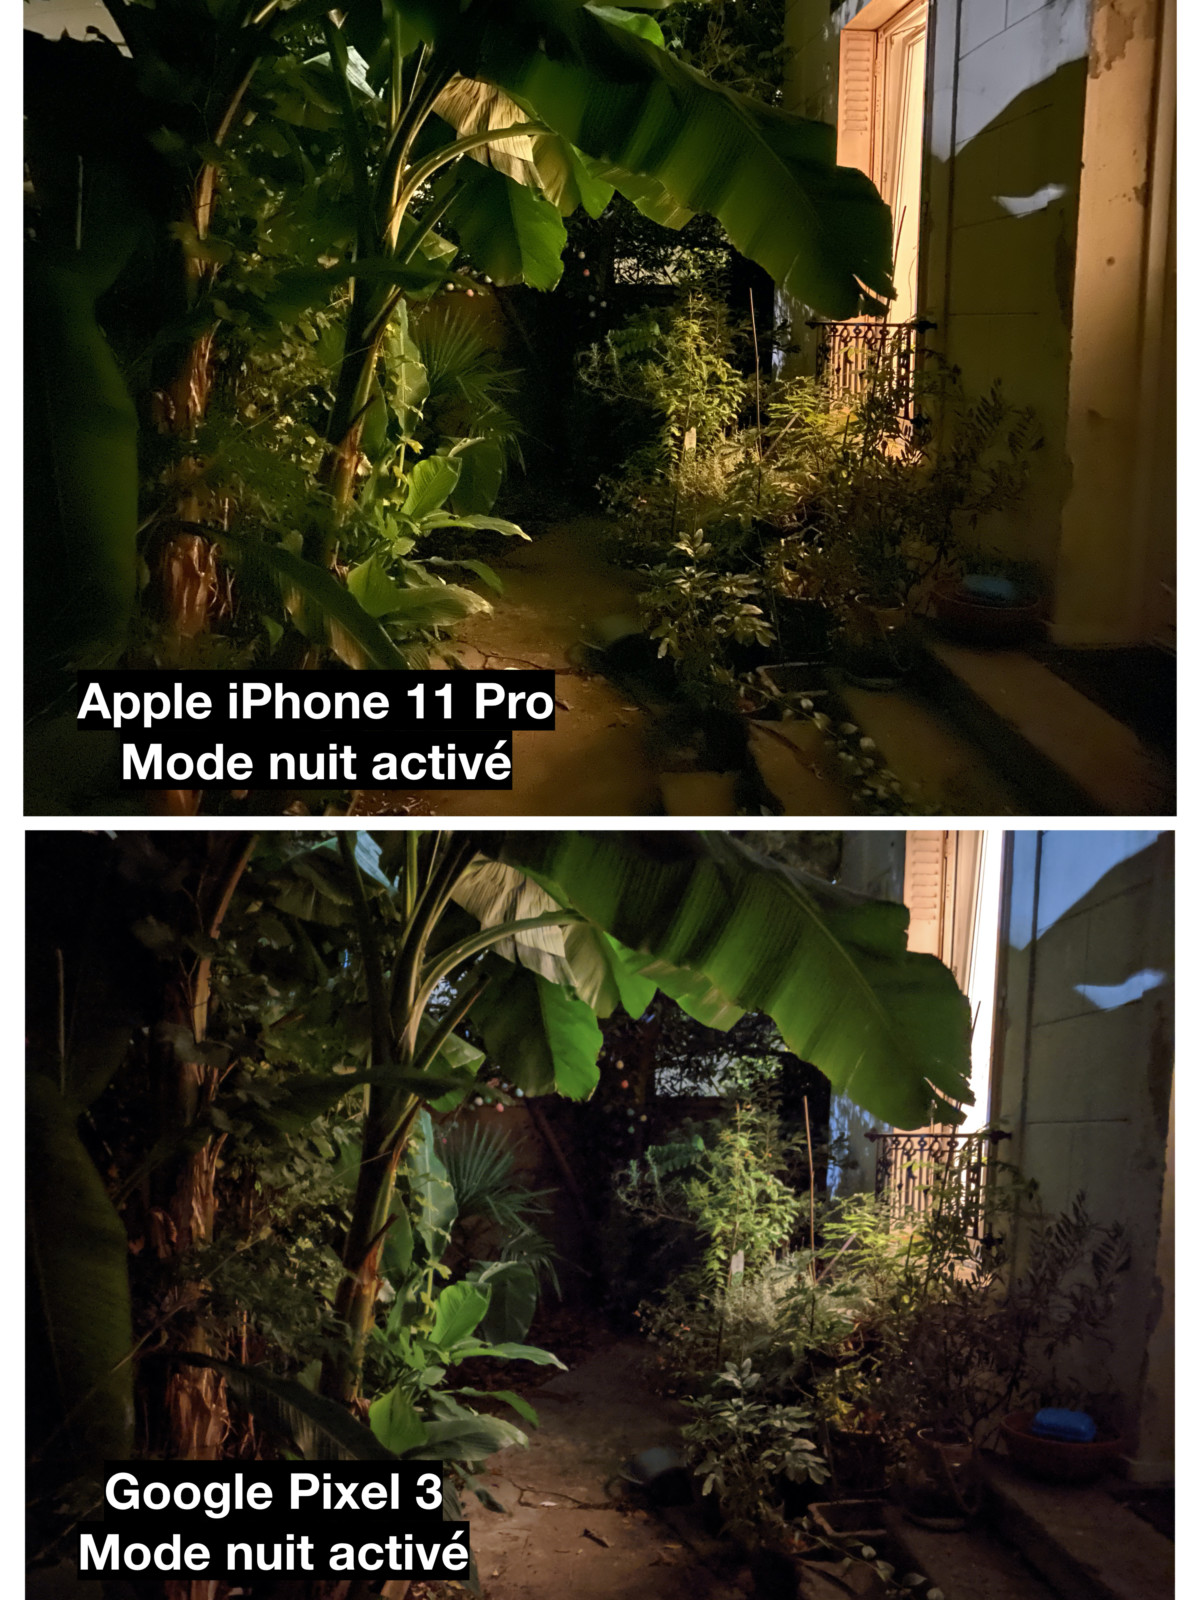 Mode nuit // Comparaison entre l’iPhone 11 Pro et le Pixel 3